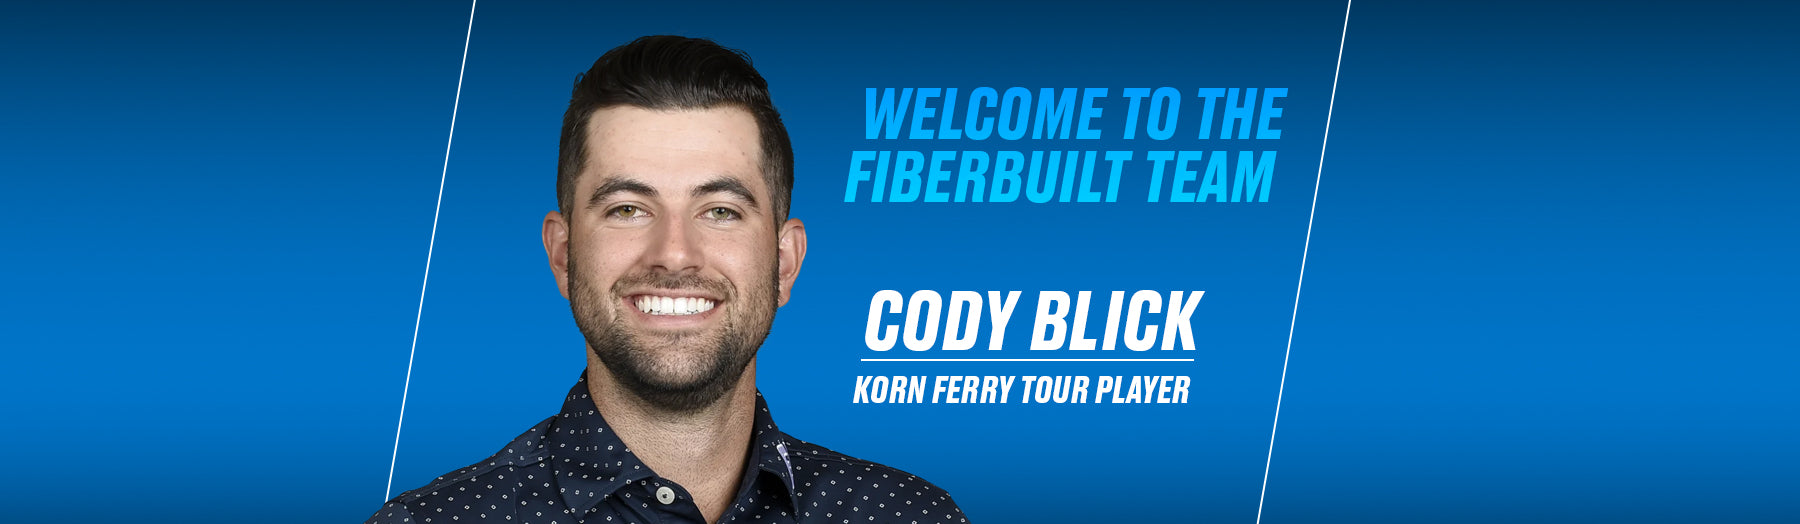 Fiberbuilt Golf Welcomes Korn Ferry Tour Standout Cody Blick as New Brand Ambassador